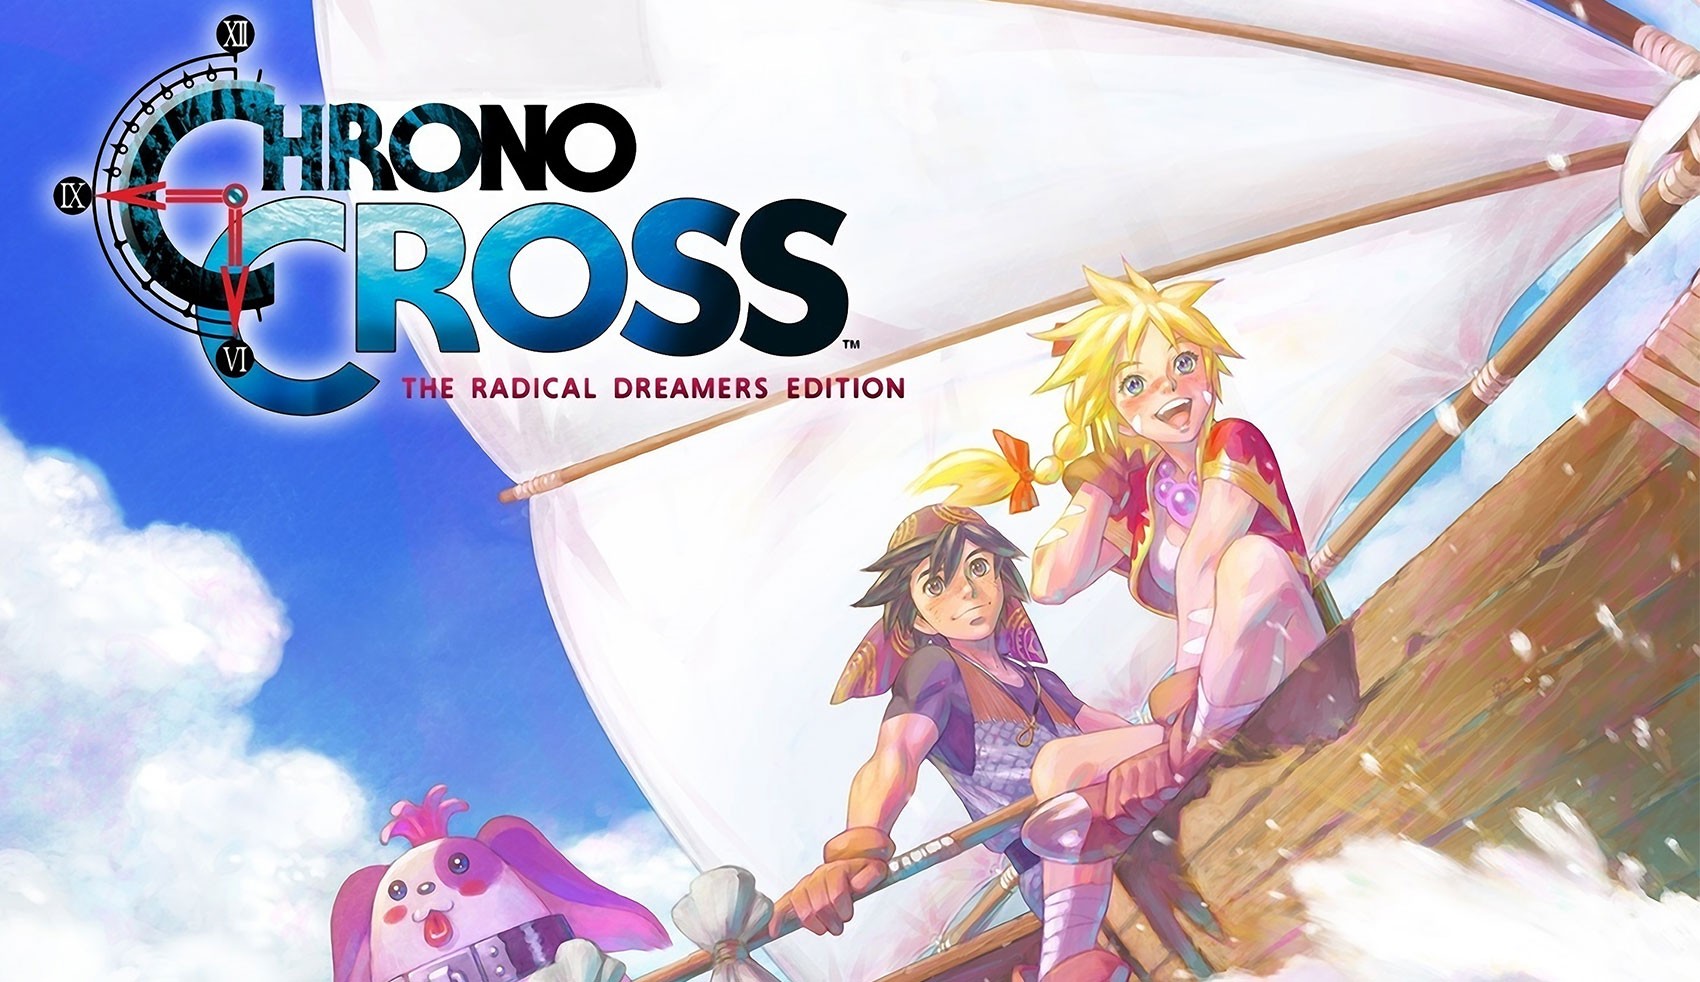 Chrono Cross 20 anos: A riqueza de um mundo formado por pequenas